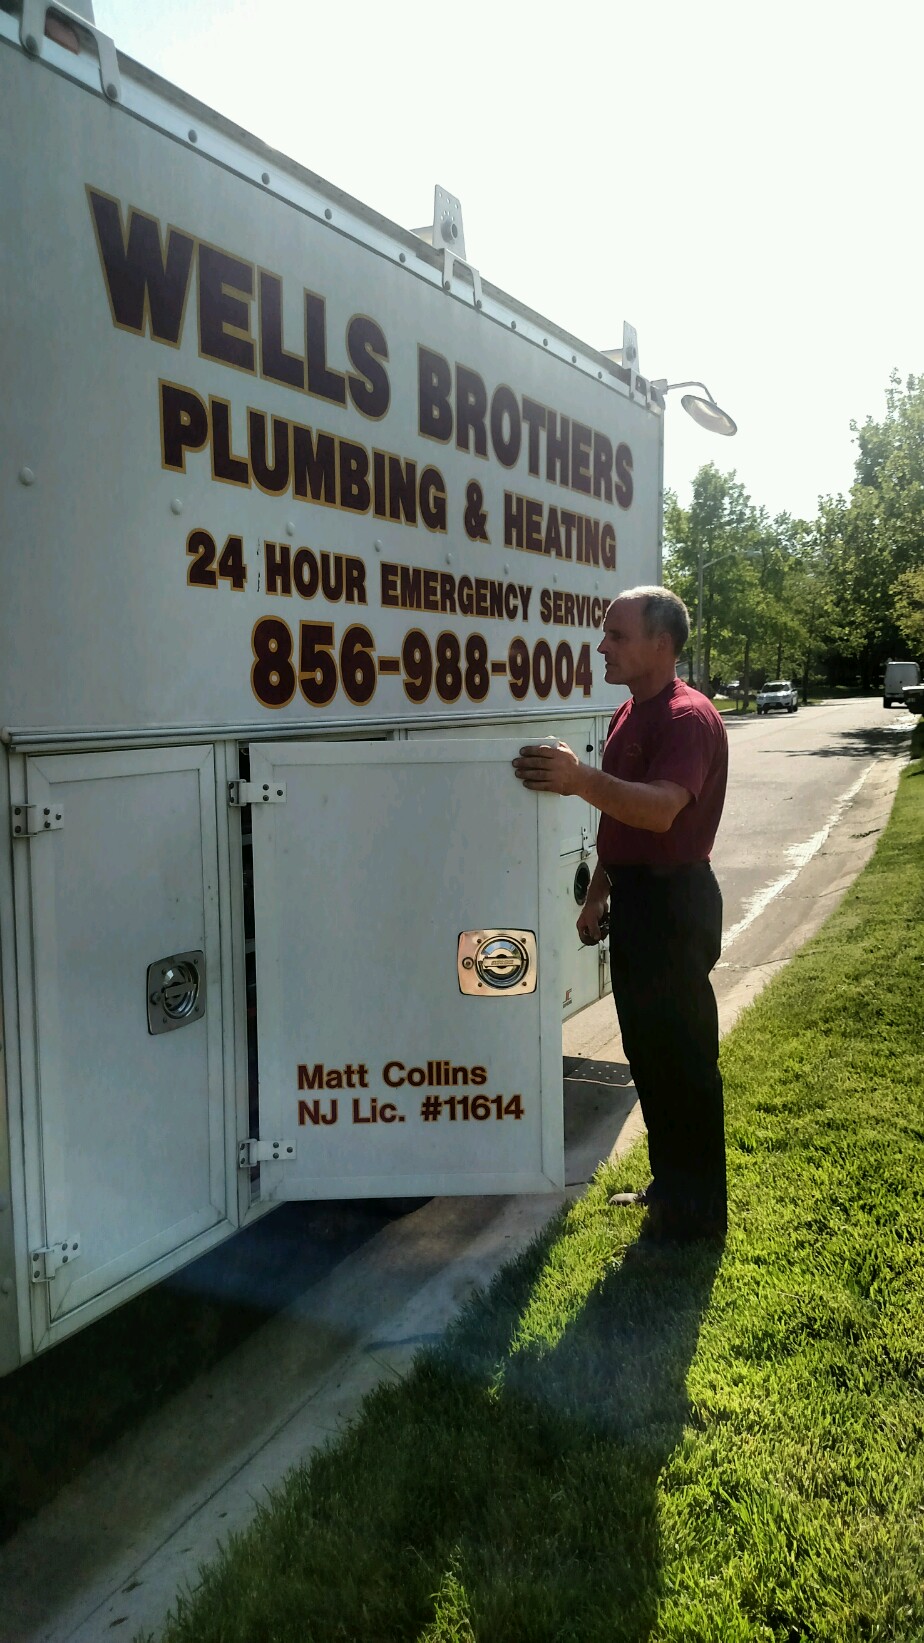 Wells Brothers Plumbing & Heating Photo